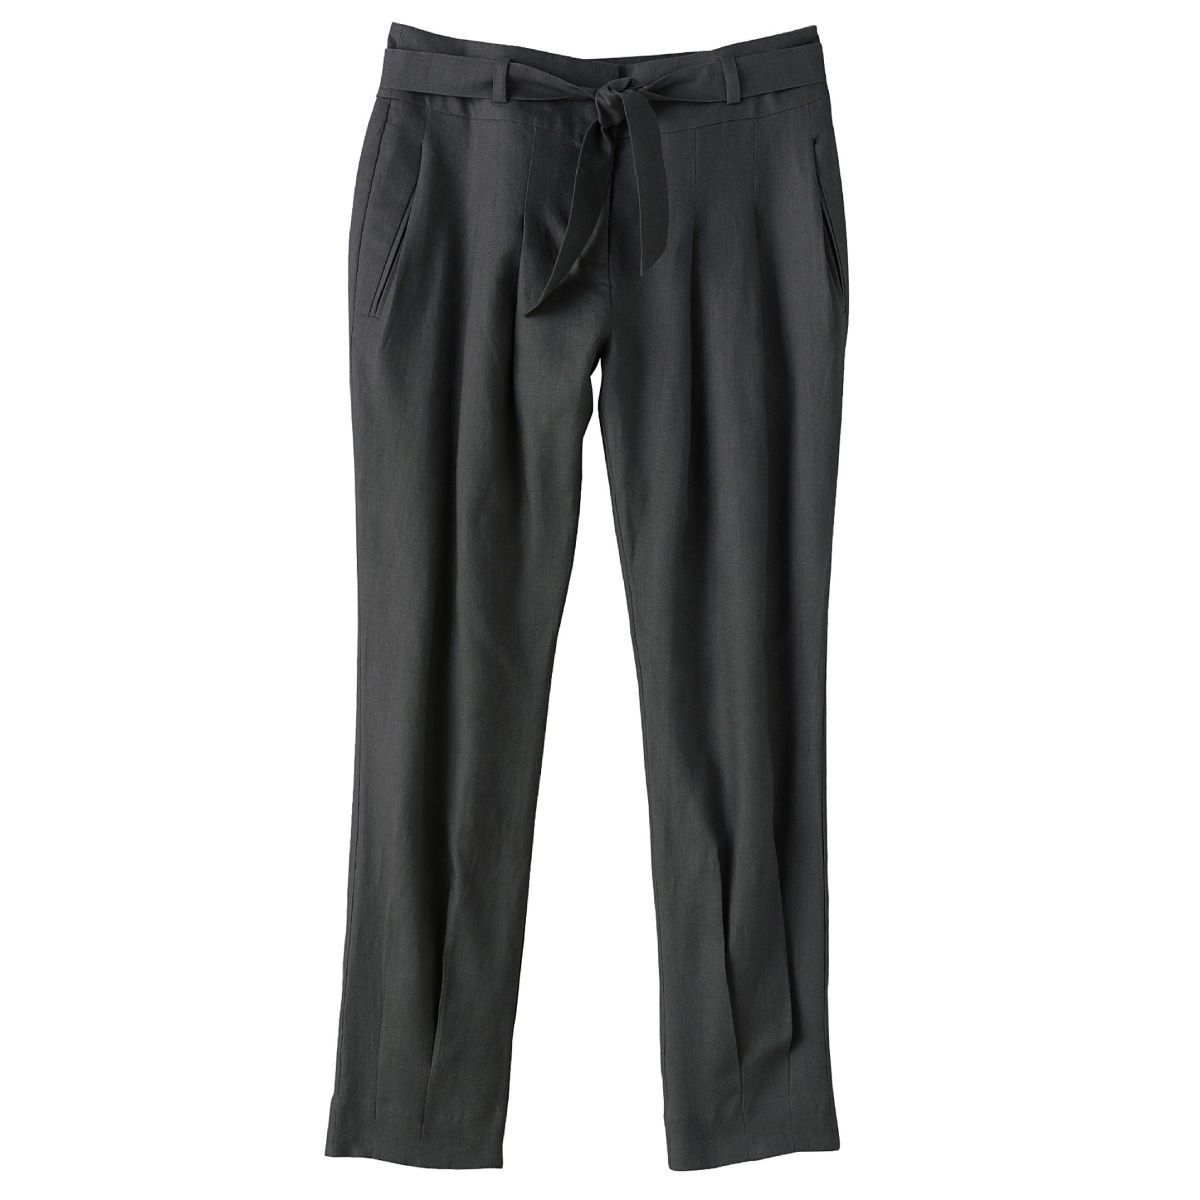 Arabic fishing trousers 100% linen, low waist